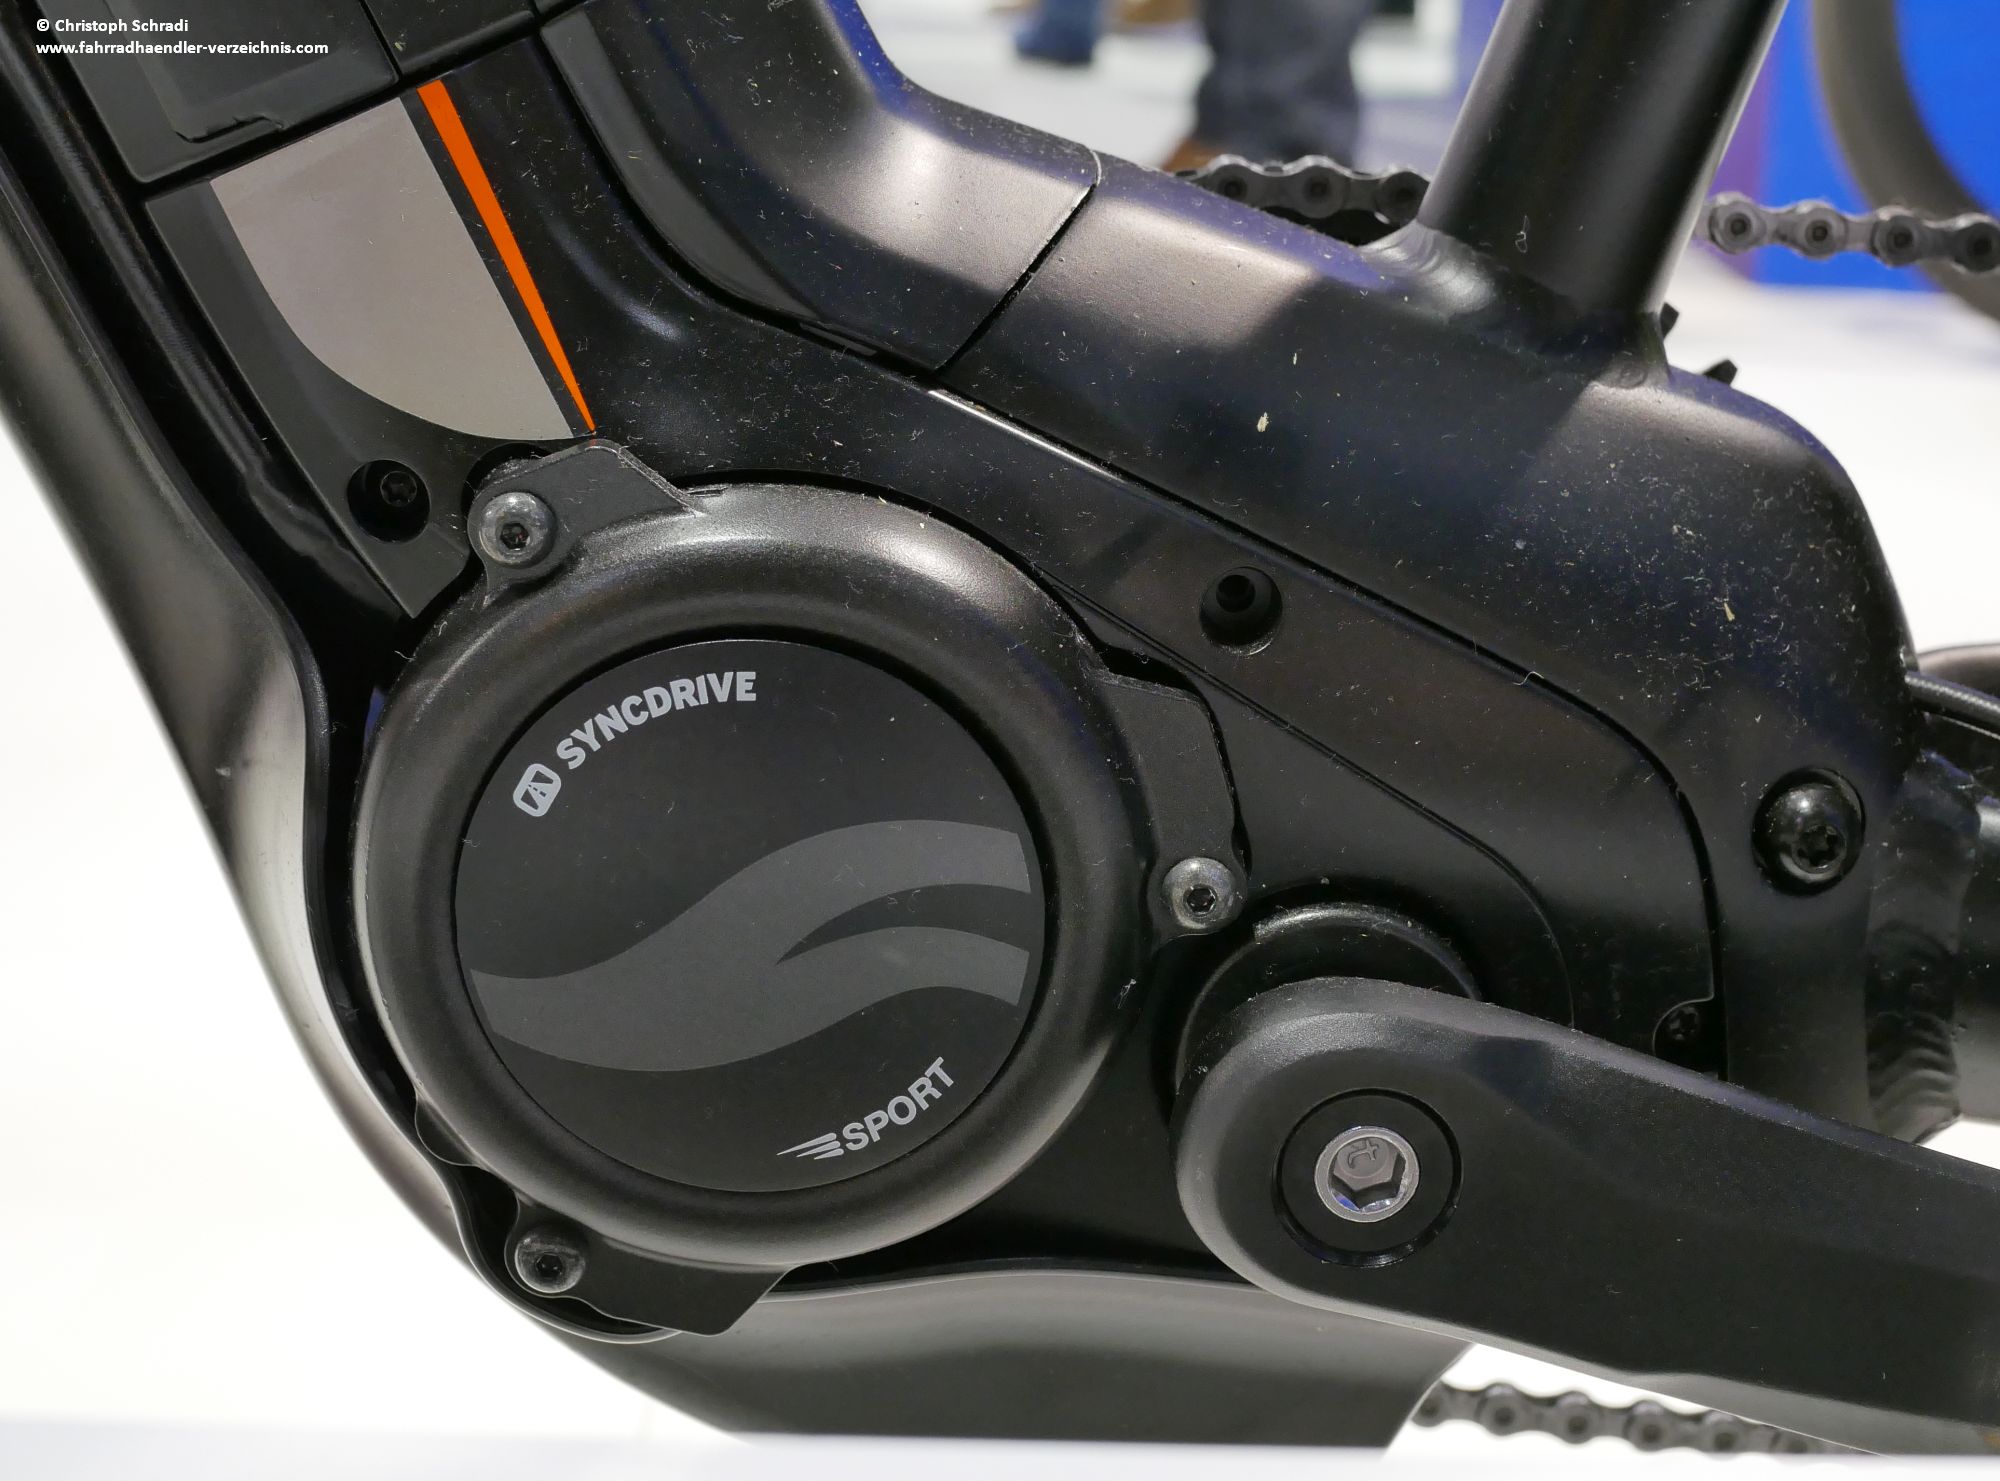 Mit dem SyncDrive Sport Motor bietet Giant einen soliden E-Bike Antrieb für Trekking- sowie Citybikes - aber auch E-MTBs an - dieser kann bis zu zwei Kettenblätter verwalten